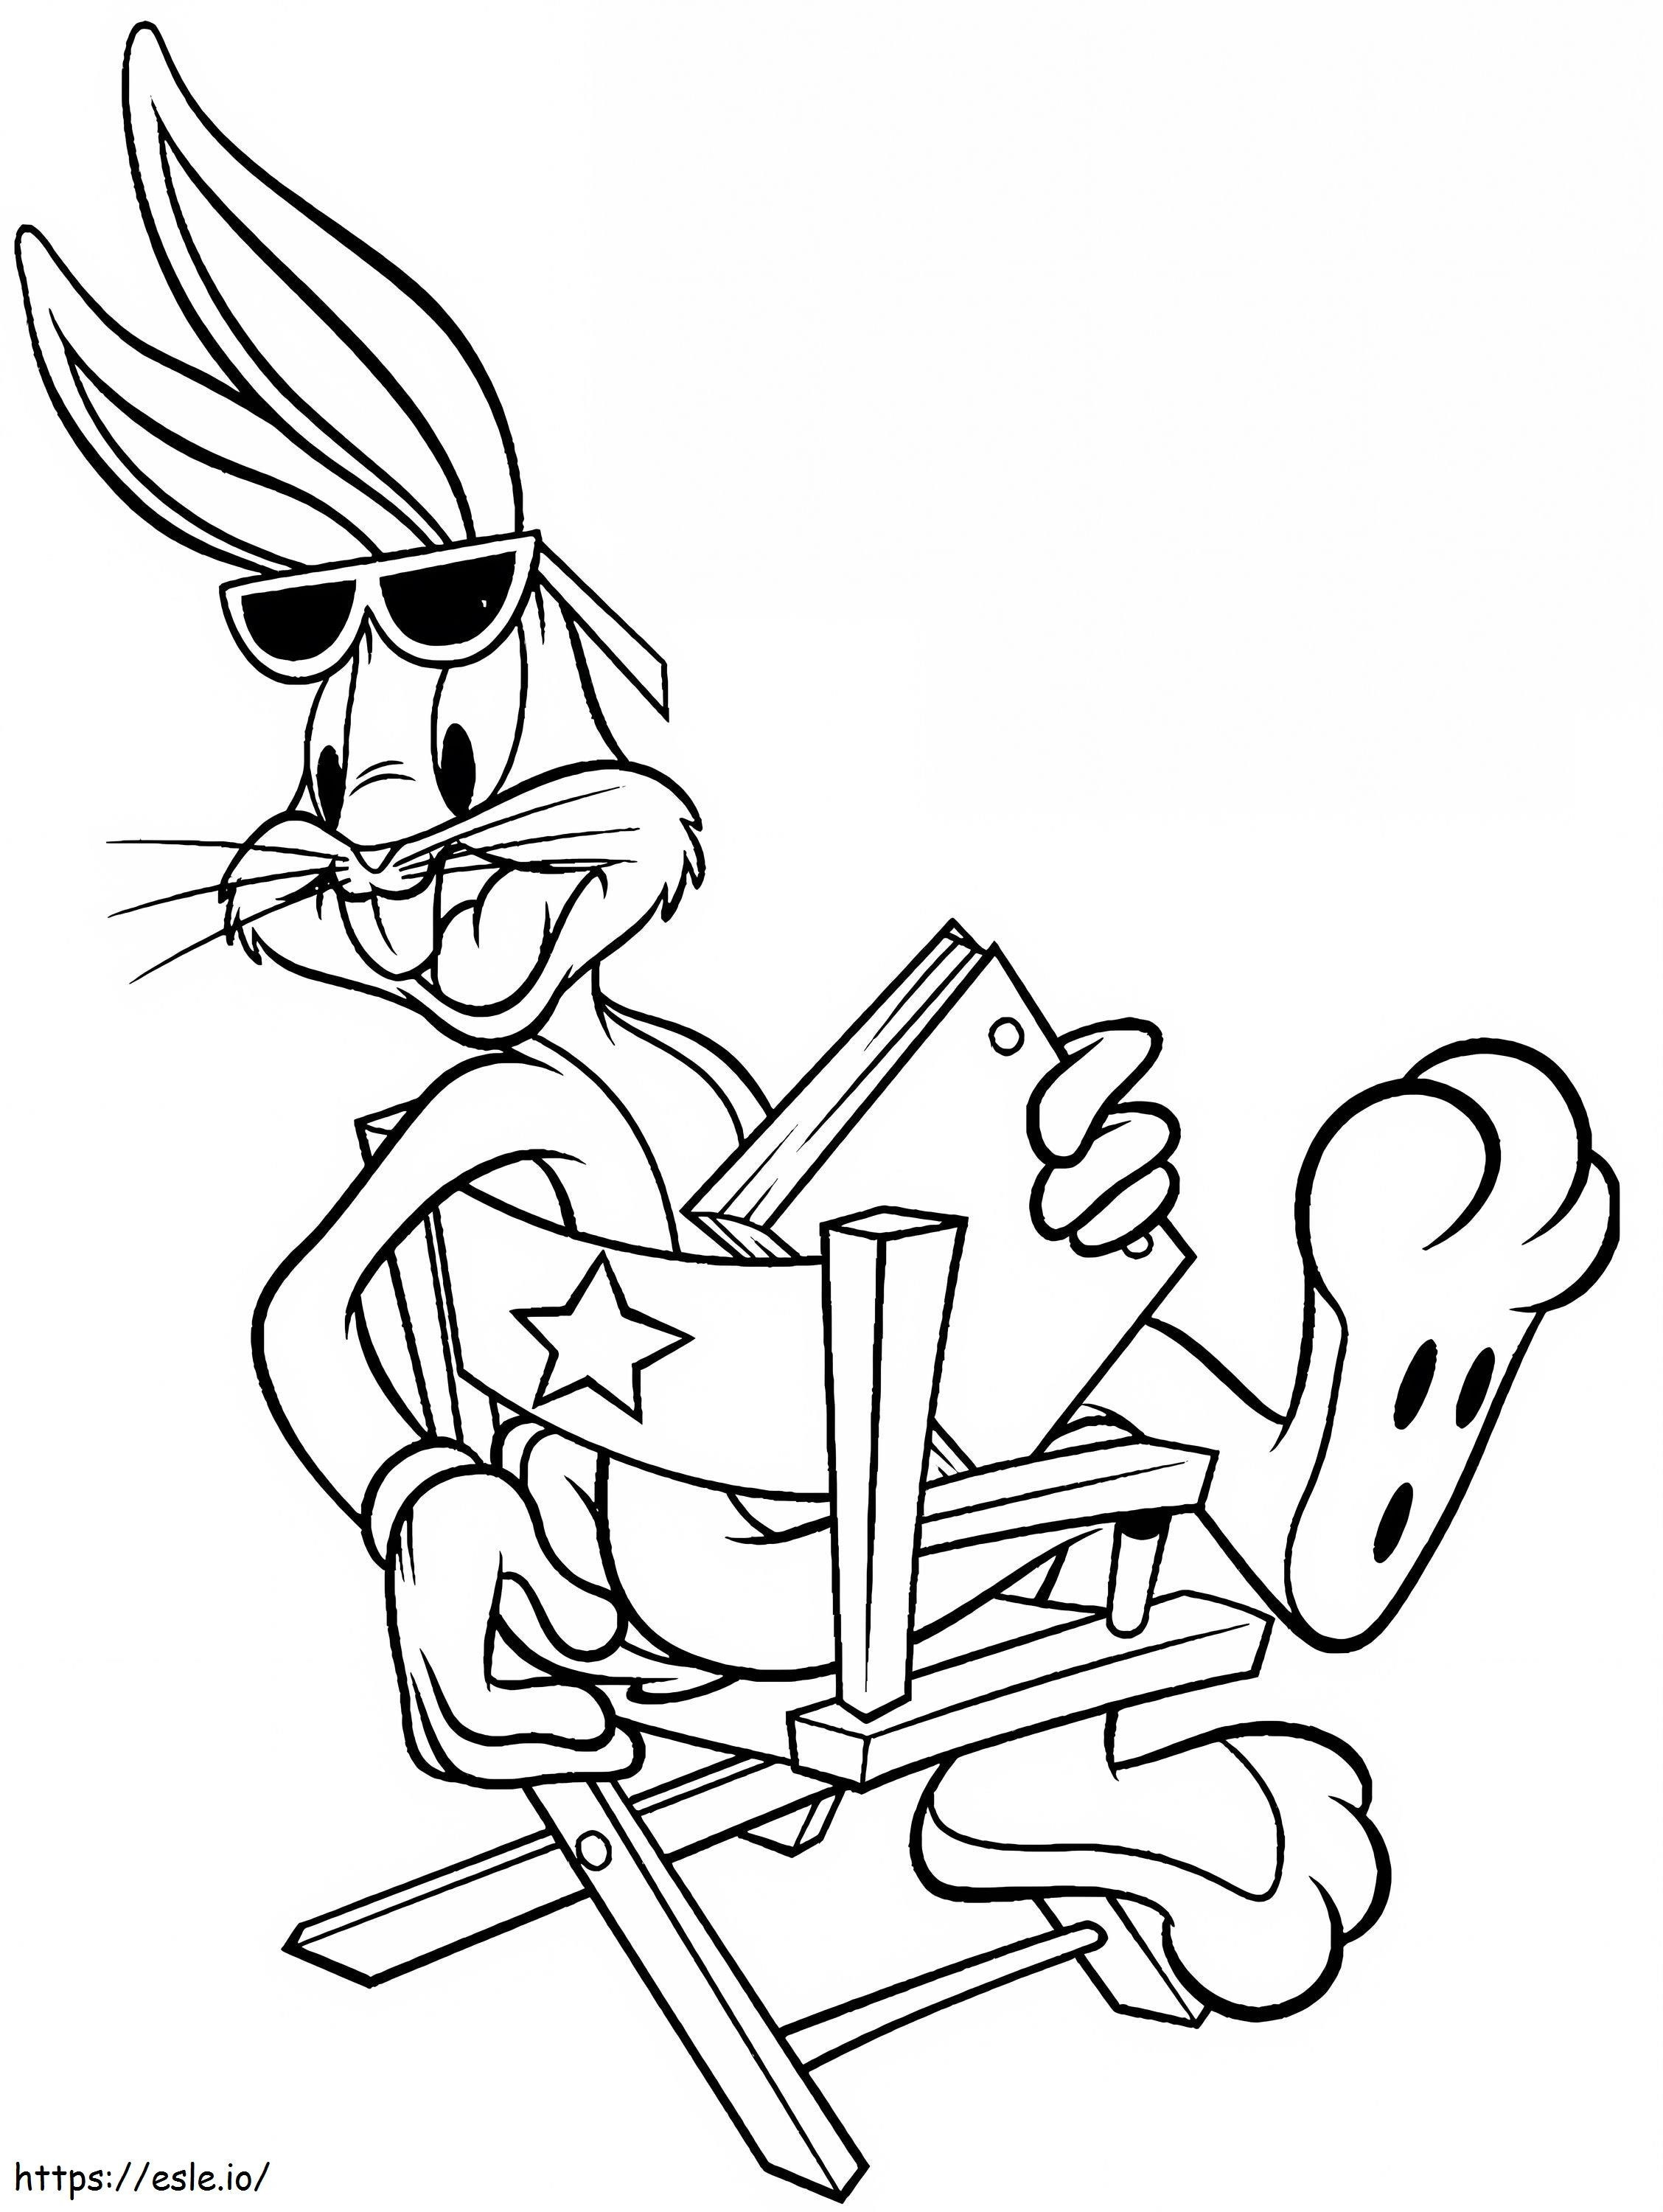 Bugs Bunny In Possesso Di Un Libro Seduto Su Una Sedia da colorare